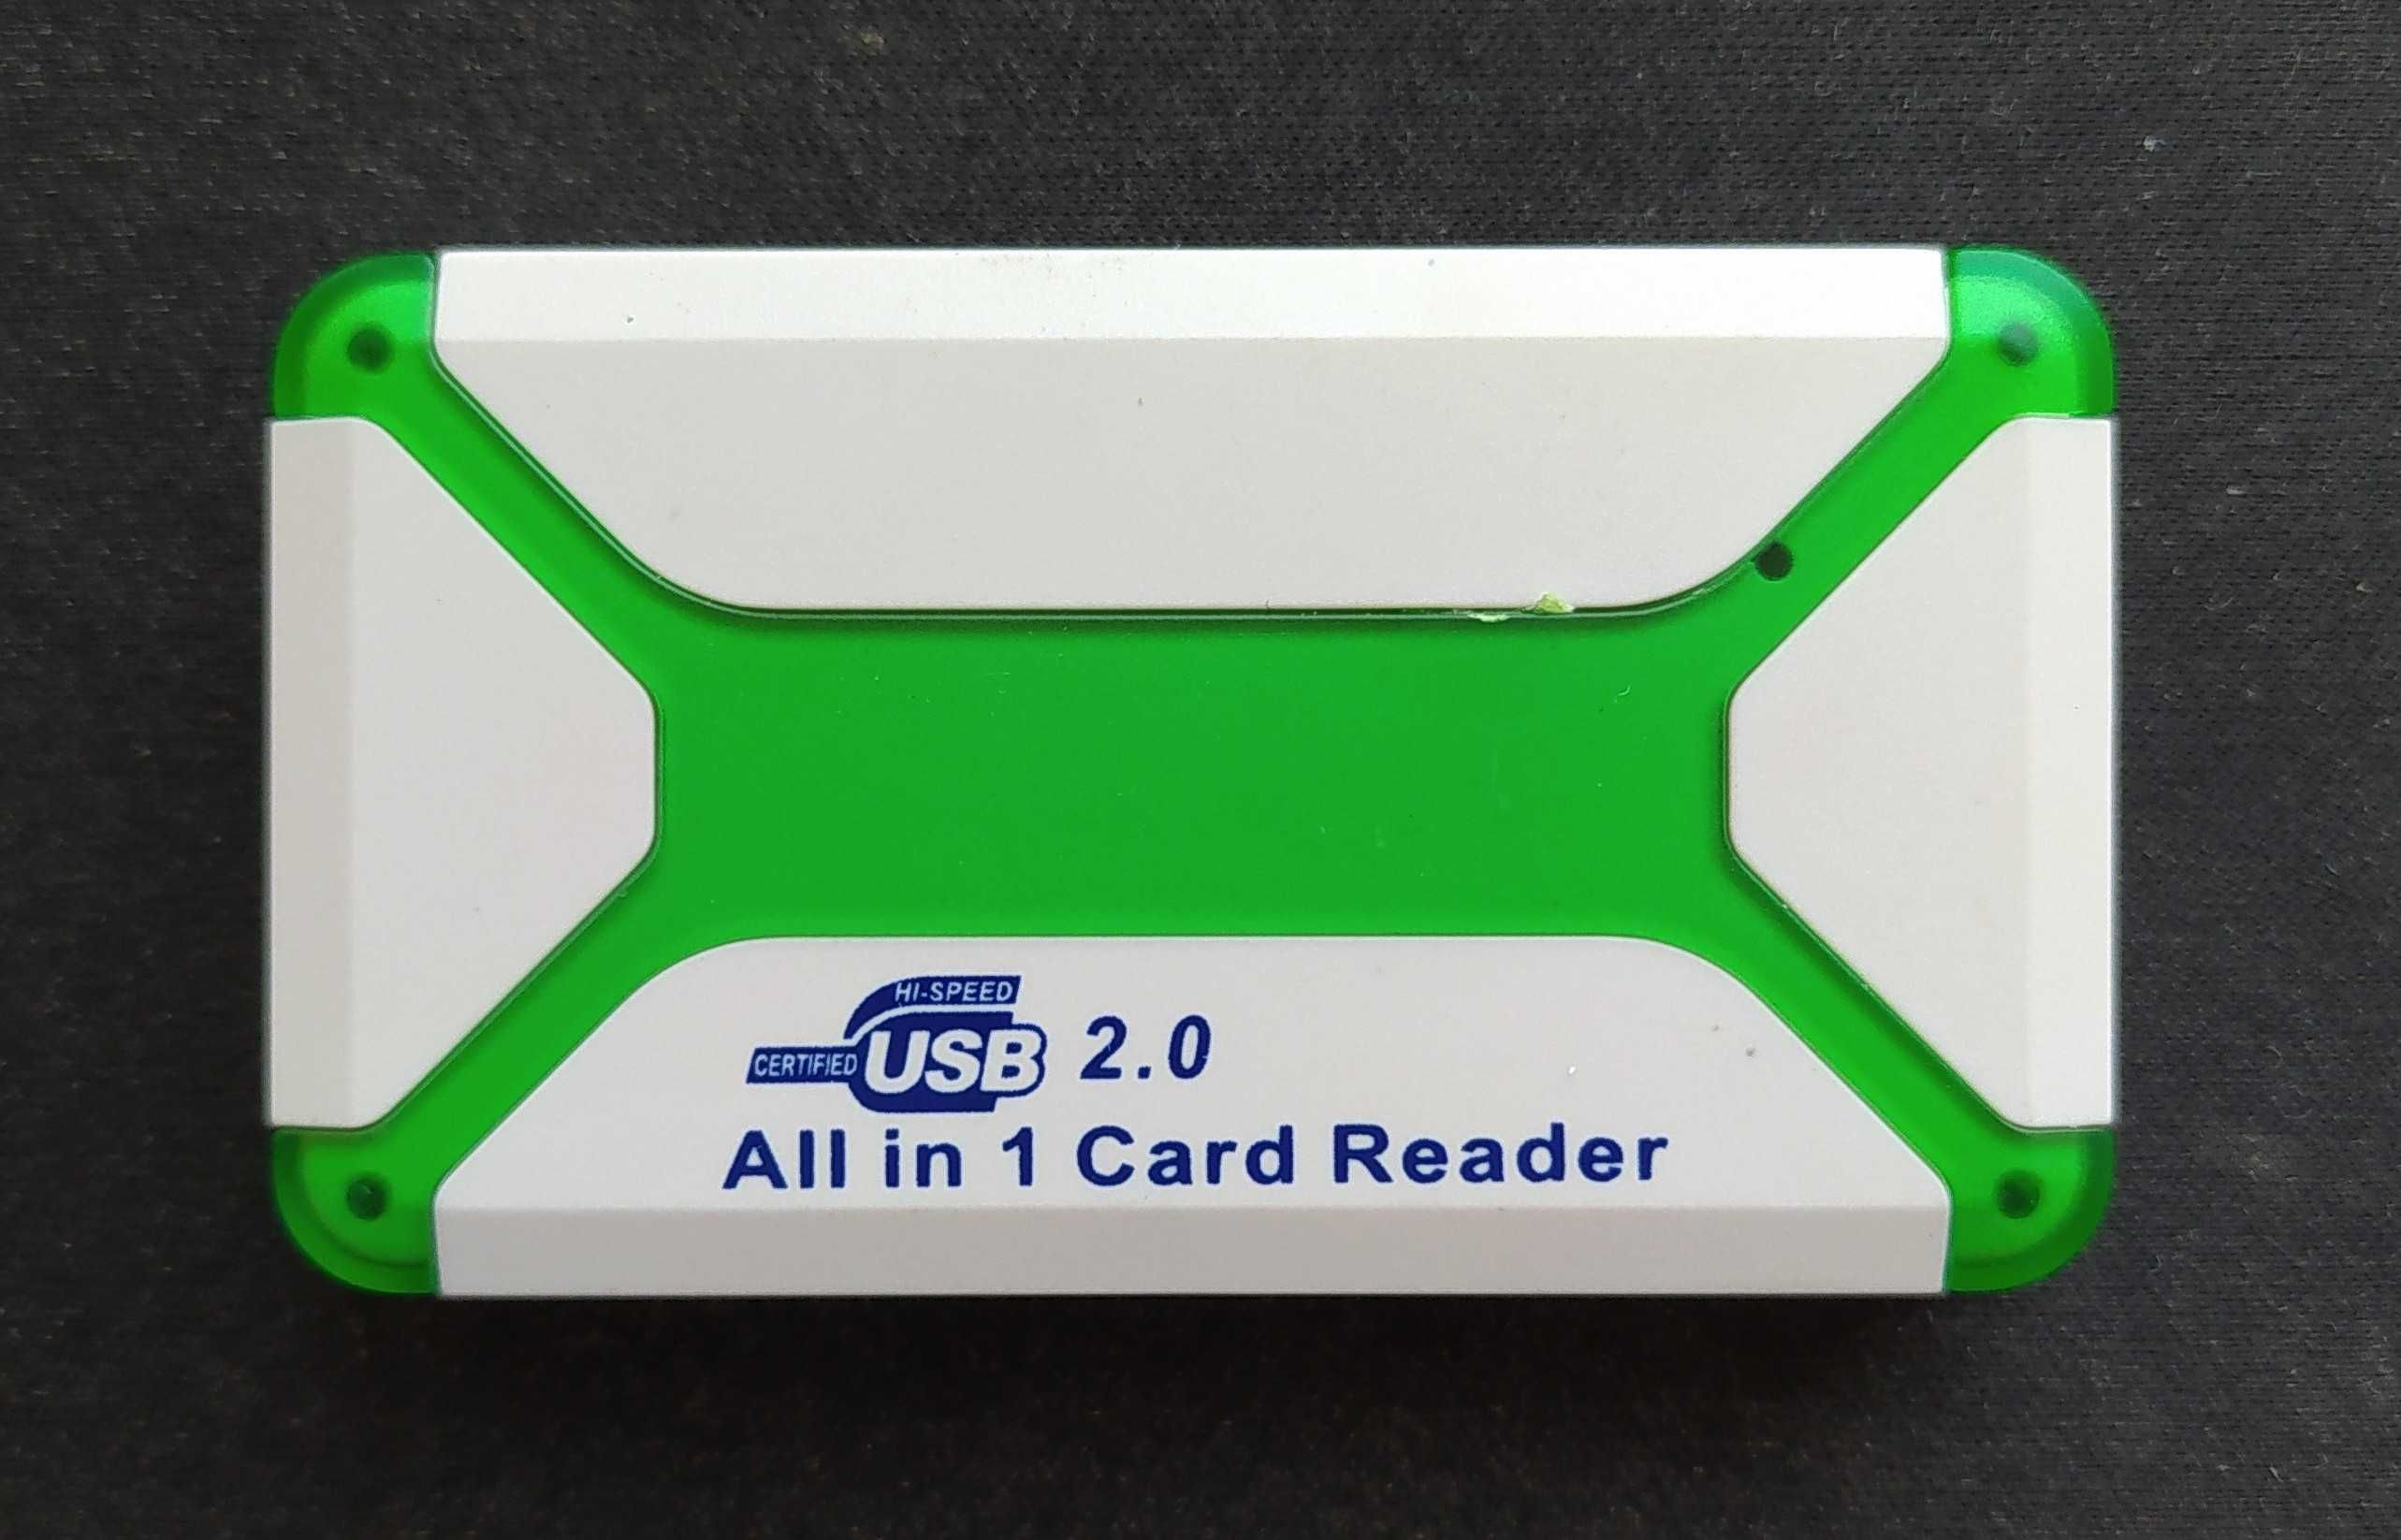 Card Reader USB 2.0